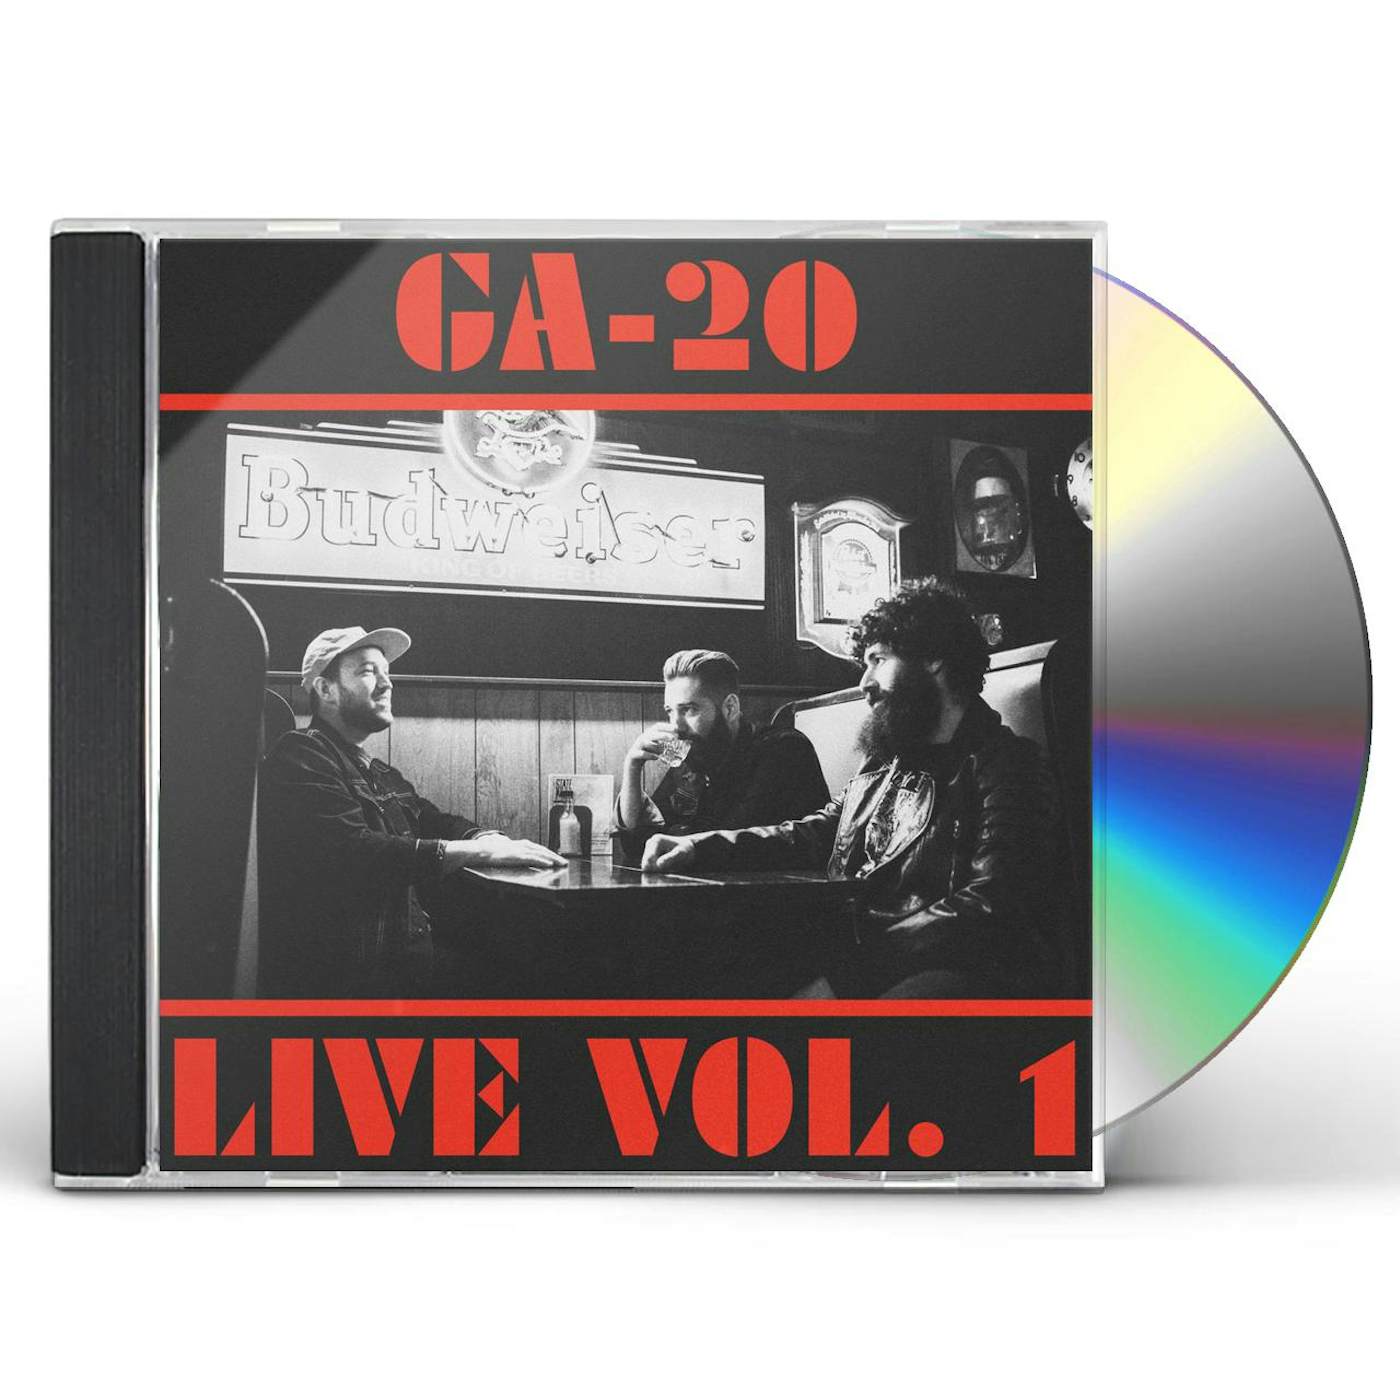 GA-20 LIVE VOL. 1 CD